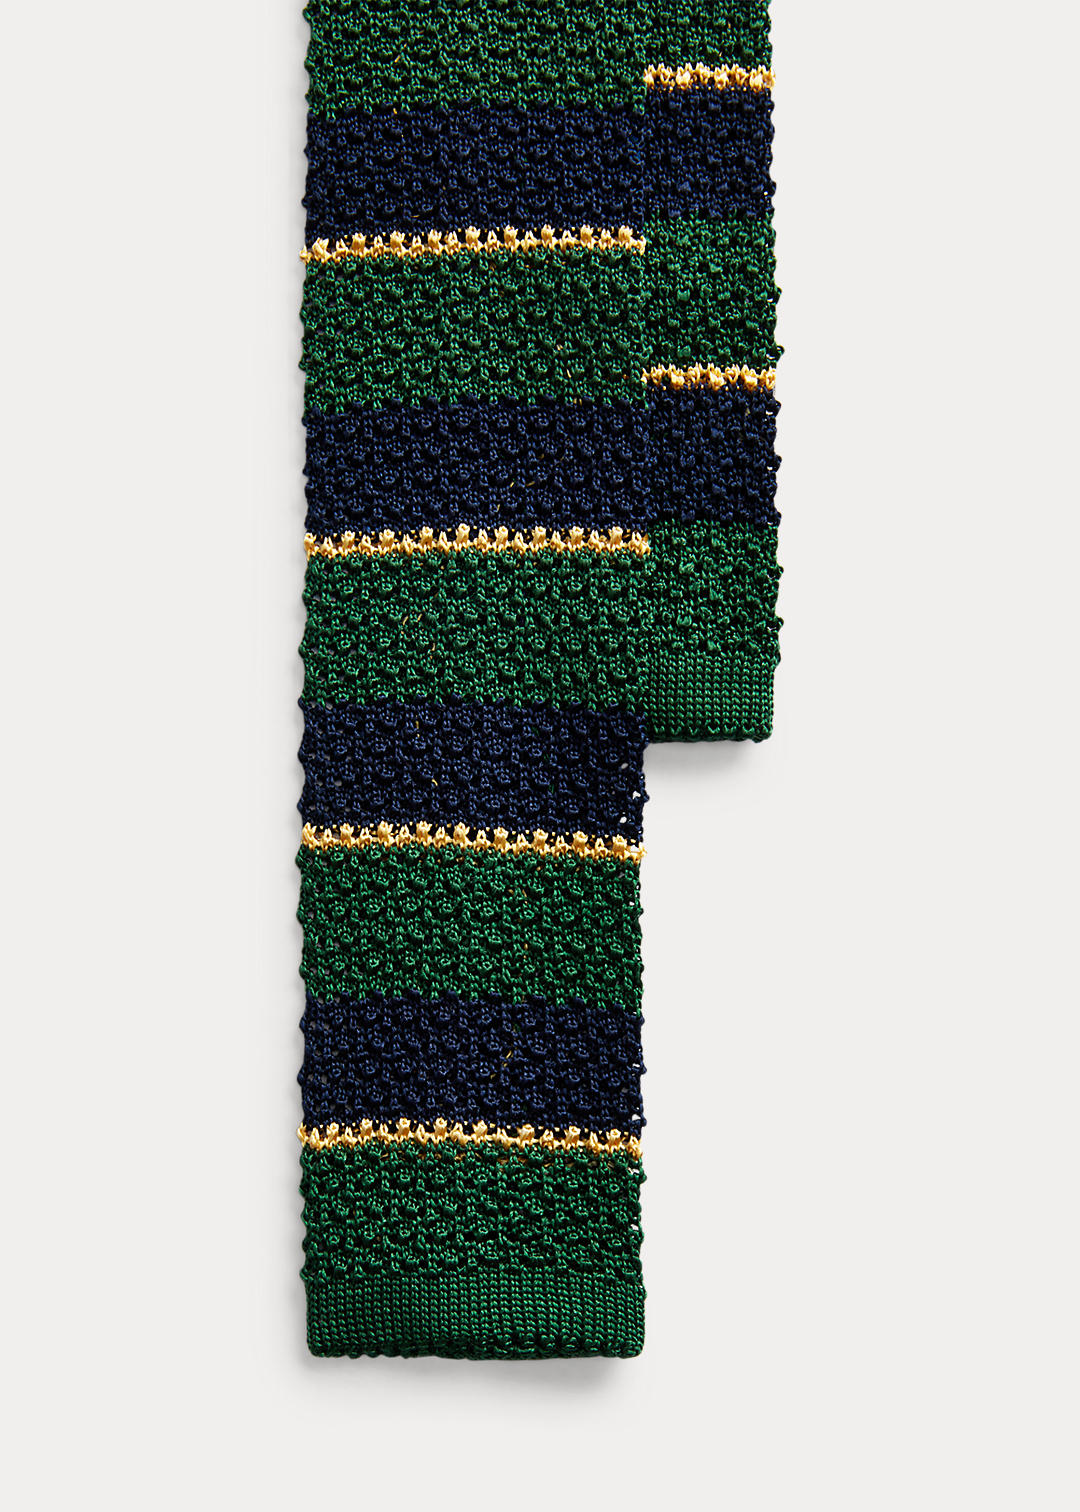 Aprender acerca 98+ imagen polo ralph lauren knit tie